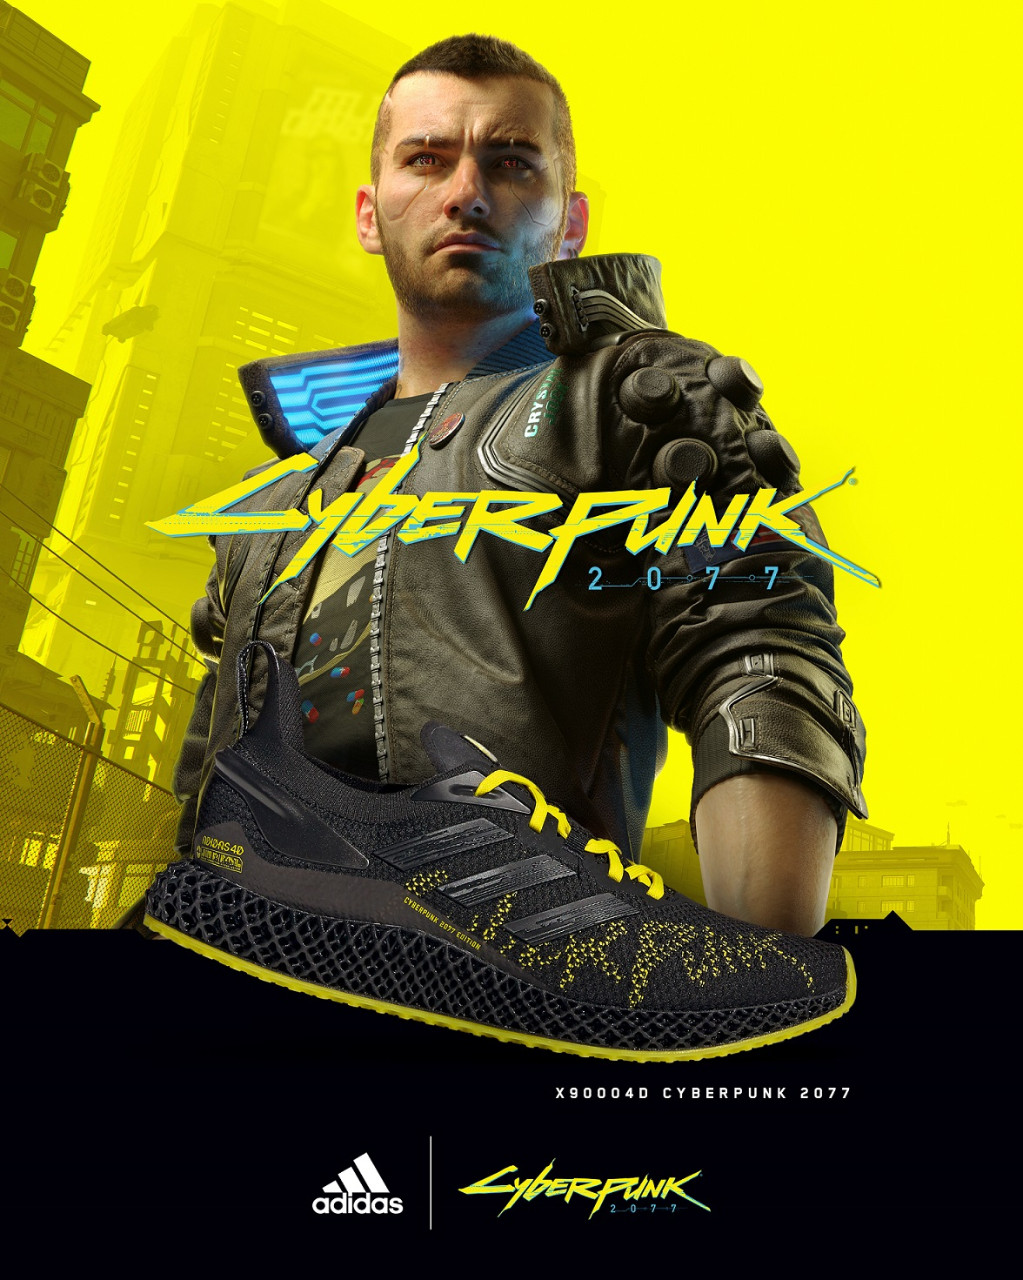 6. 風格大膽的adidas X9000 4D x Cyberpunk 2077科技跑鞋將《Cyberpunk 2077》世界觀的鮮豔色彩融入鞋款設計中，充滿衝突美學風格